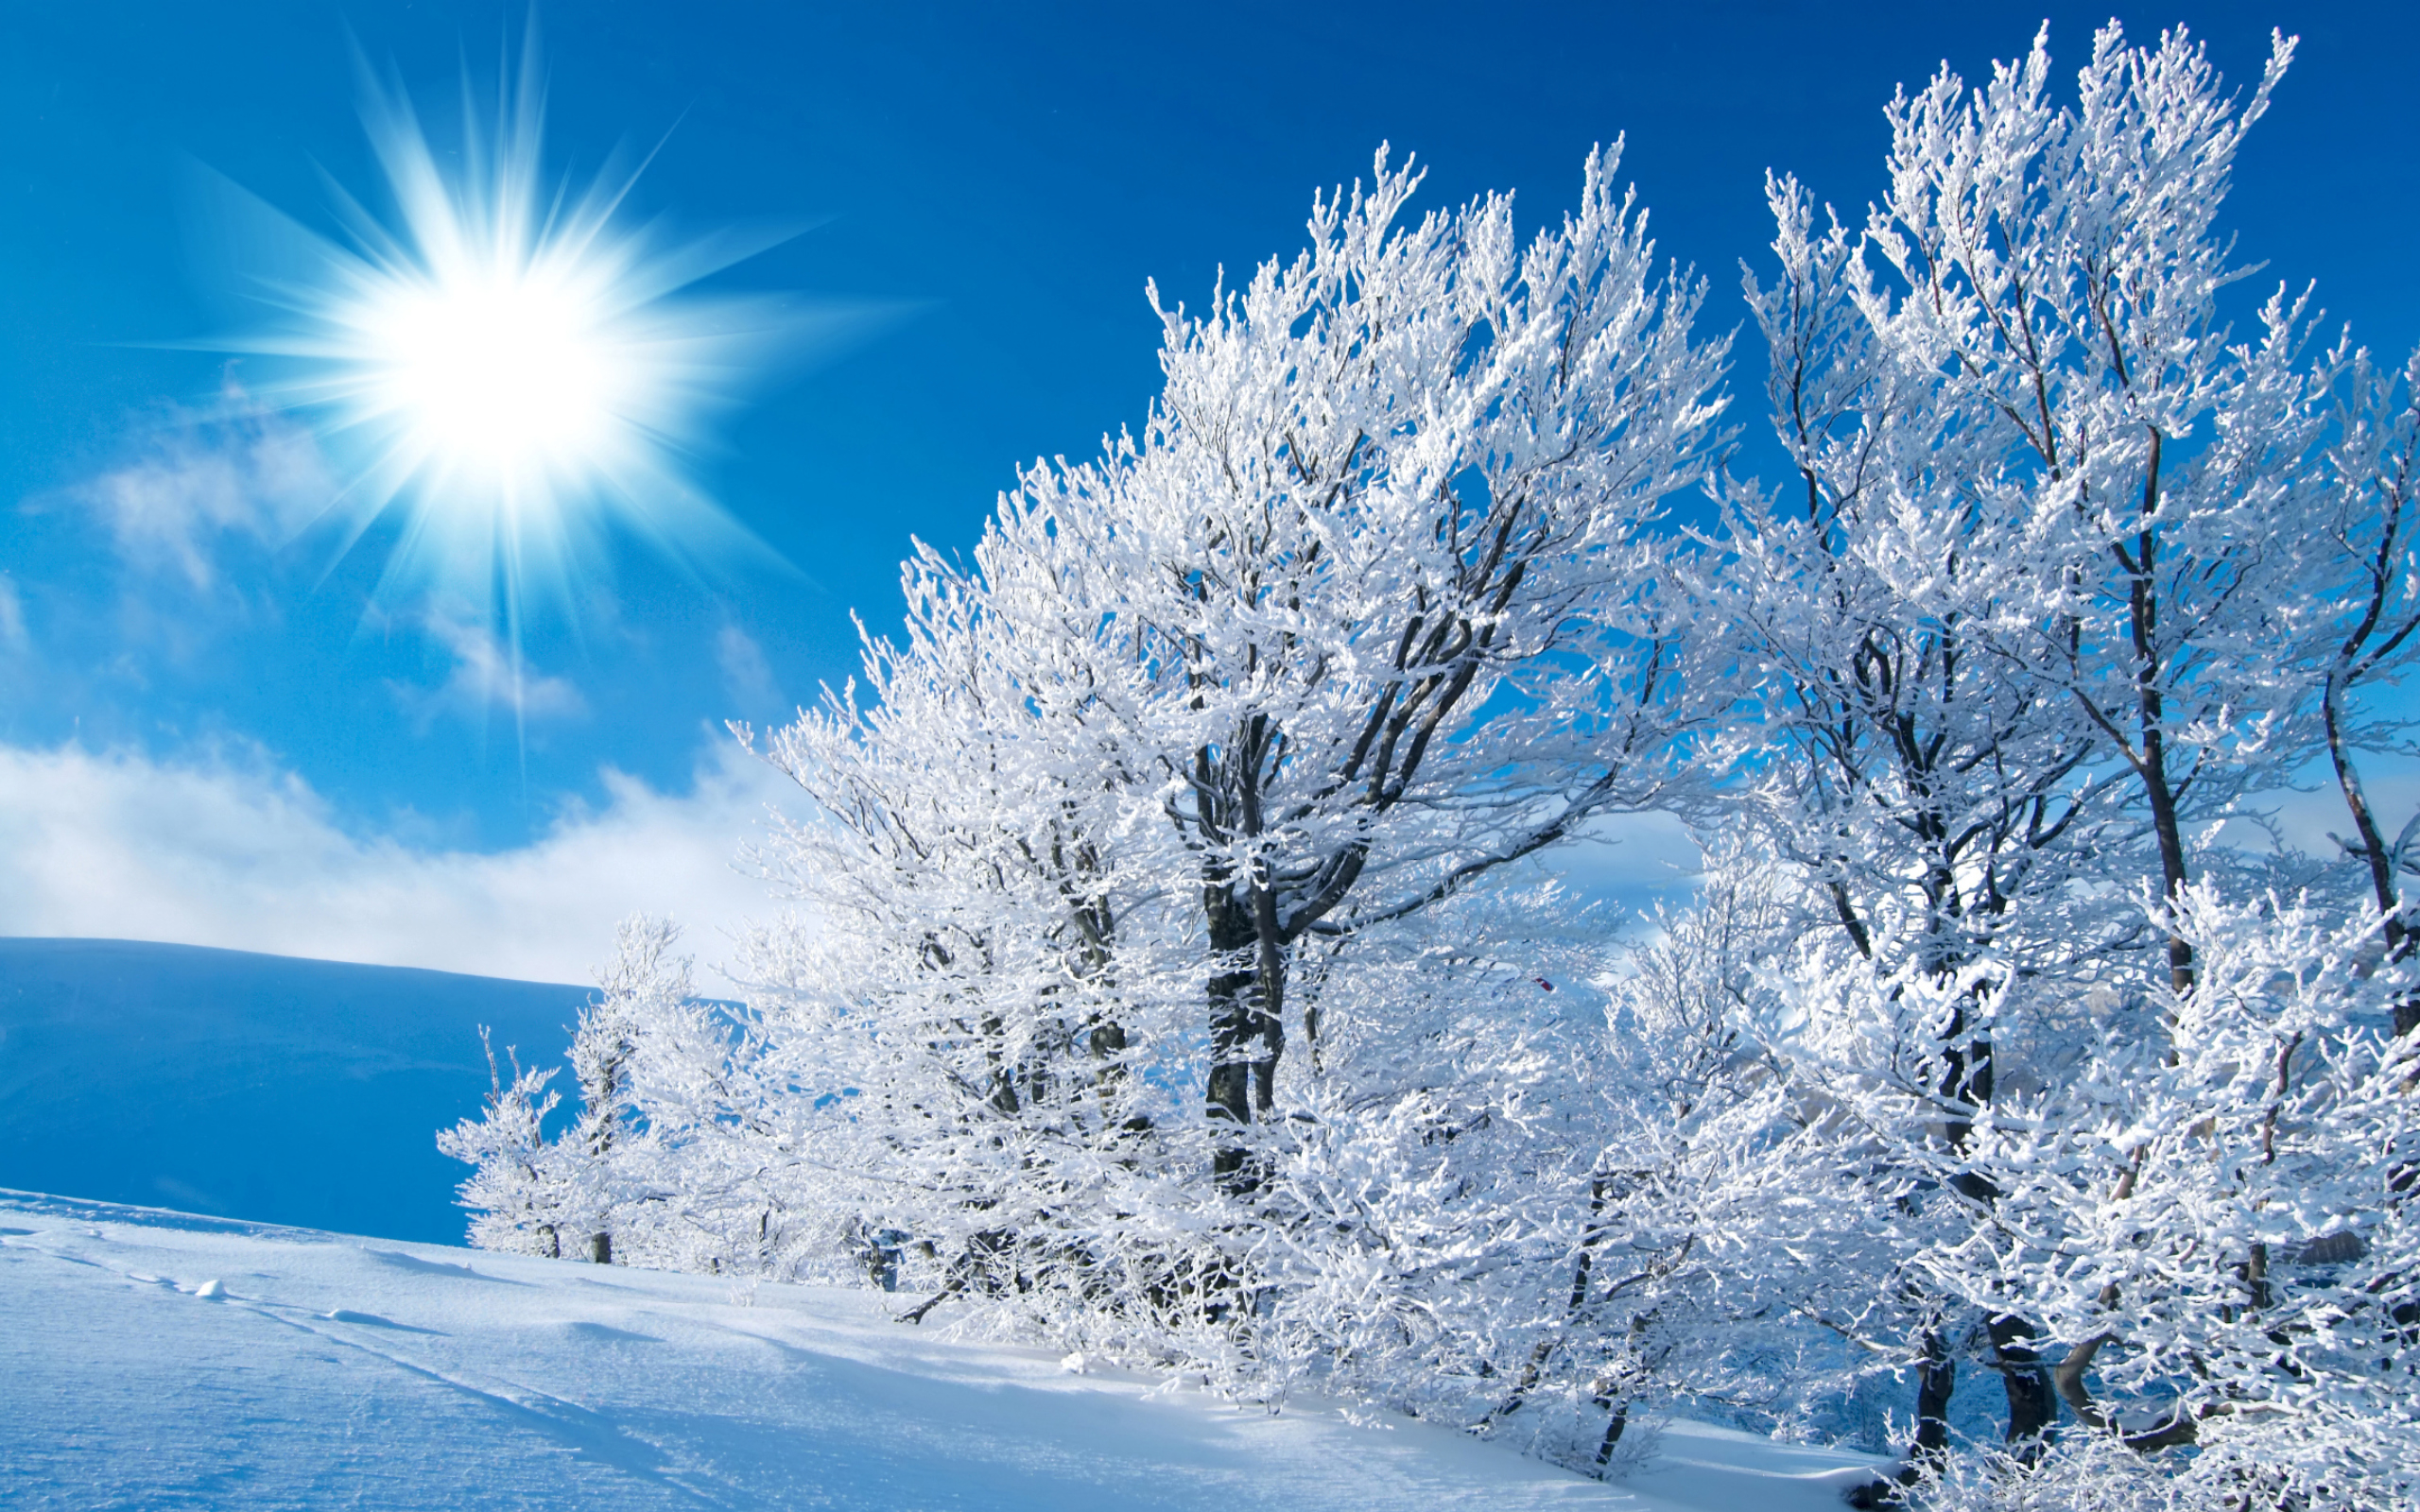 Winter Sun   Wallpaper High Definition High Quality Widescreen 2560x1600